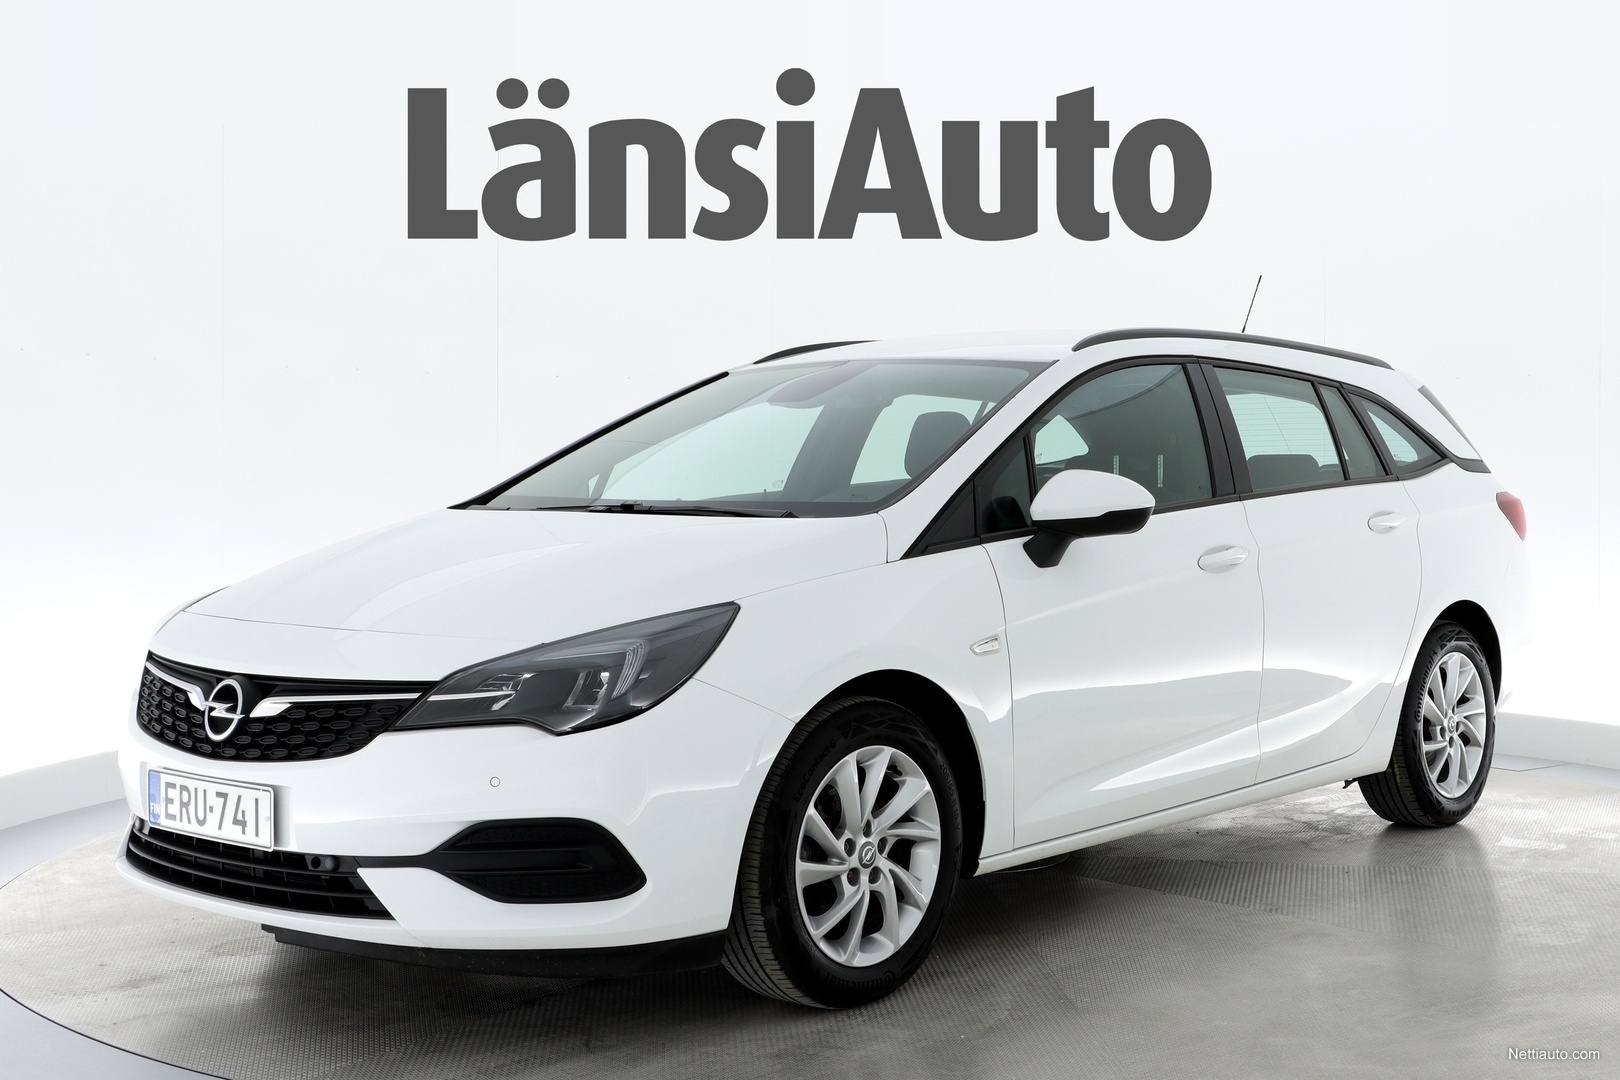 Opel Astra Sports Tourer Comfort 105 D Turbo / LED-ajovalot / Ratinlämmitin  / Tutkat / Apple CarPlay & AndroidAuto **** LänsiAuto S Station Wagon 2020  - Used vehicle - Nettiauto